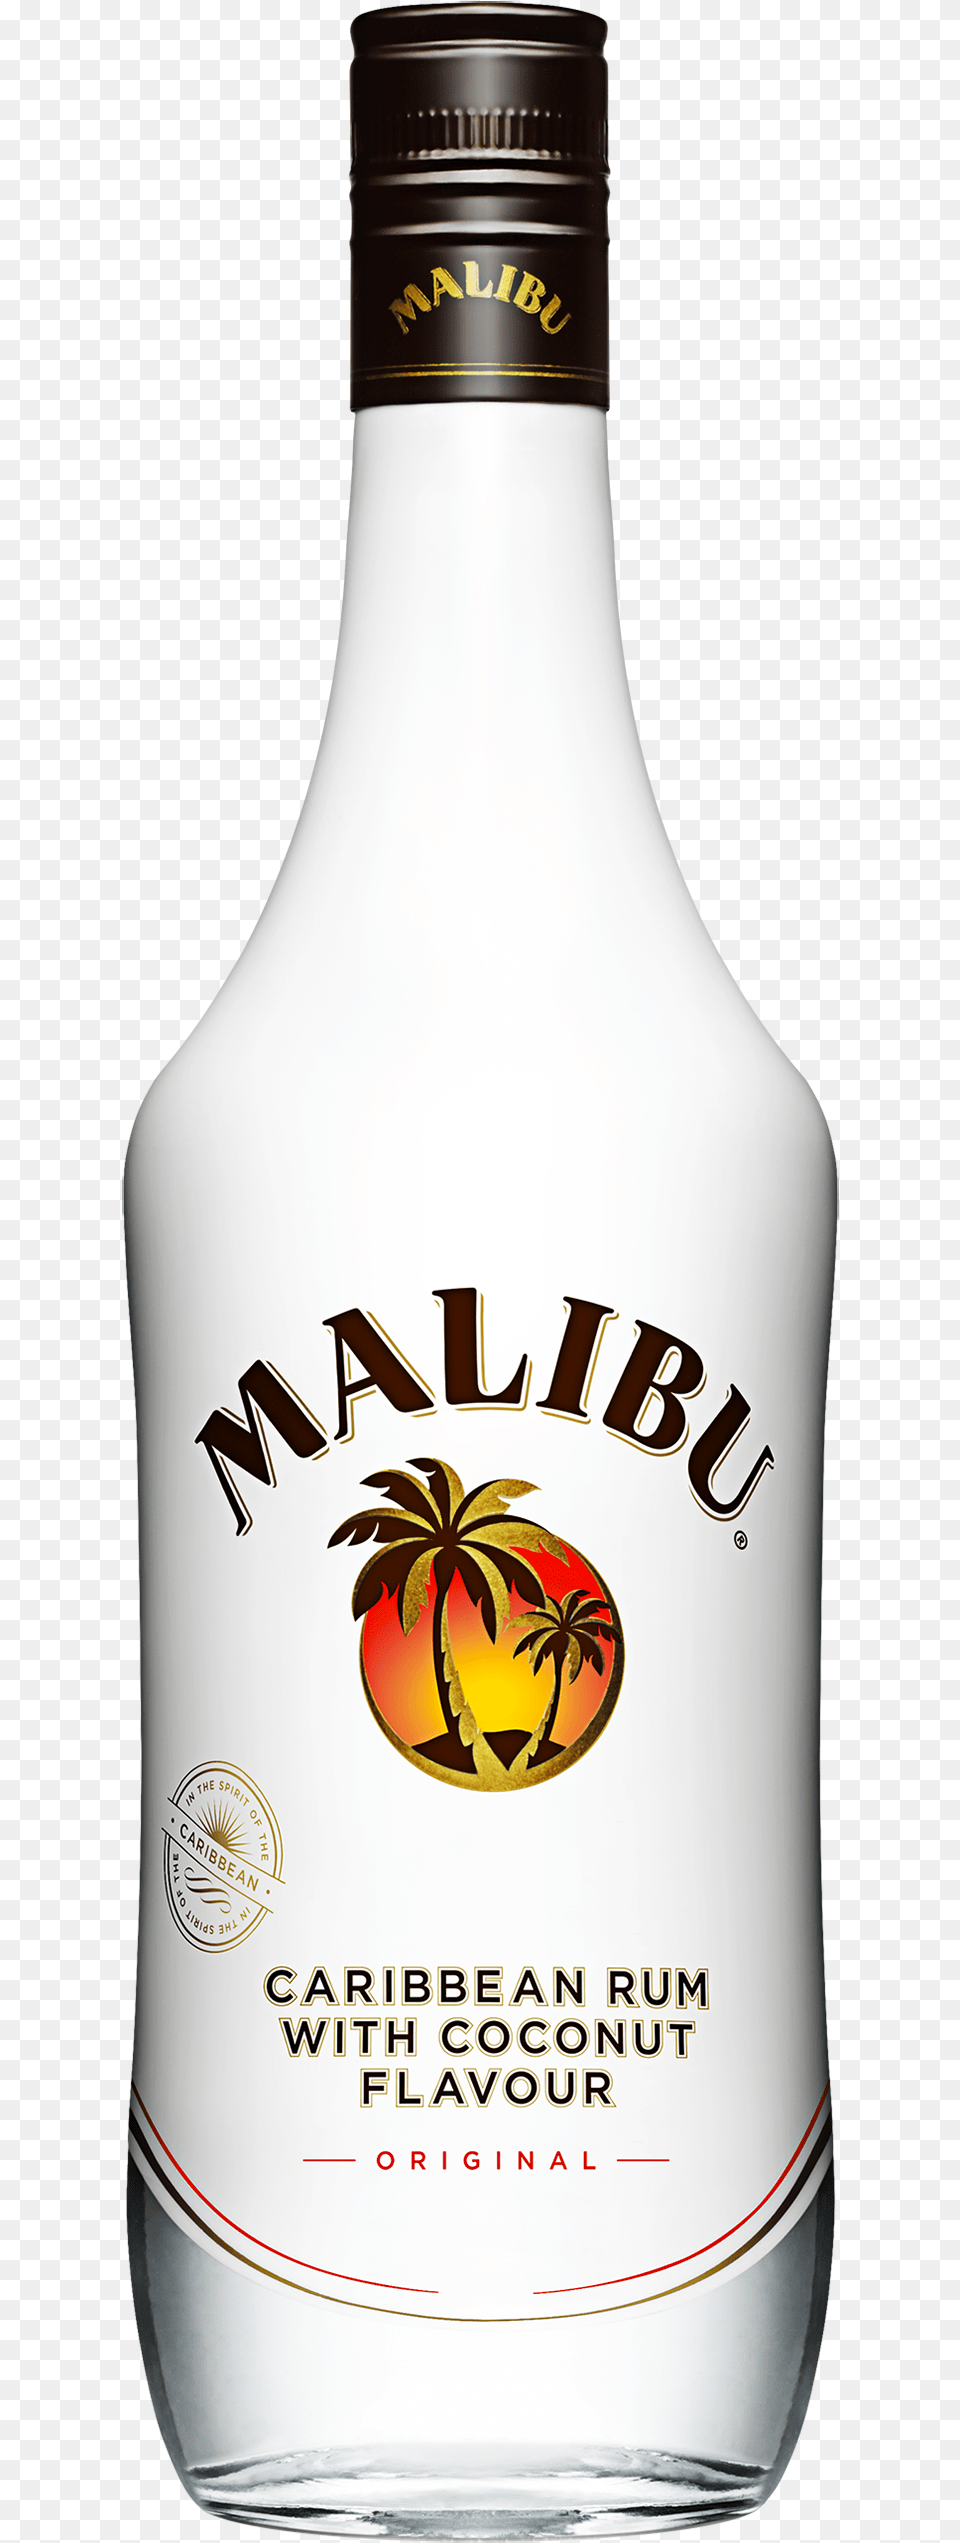 Malibu Bottle Transparent Background, Alcohol, Beverage, Liquor, Beer Png